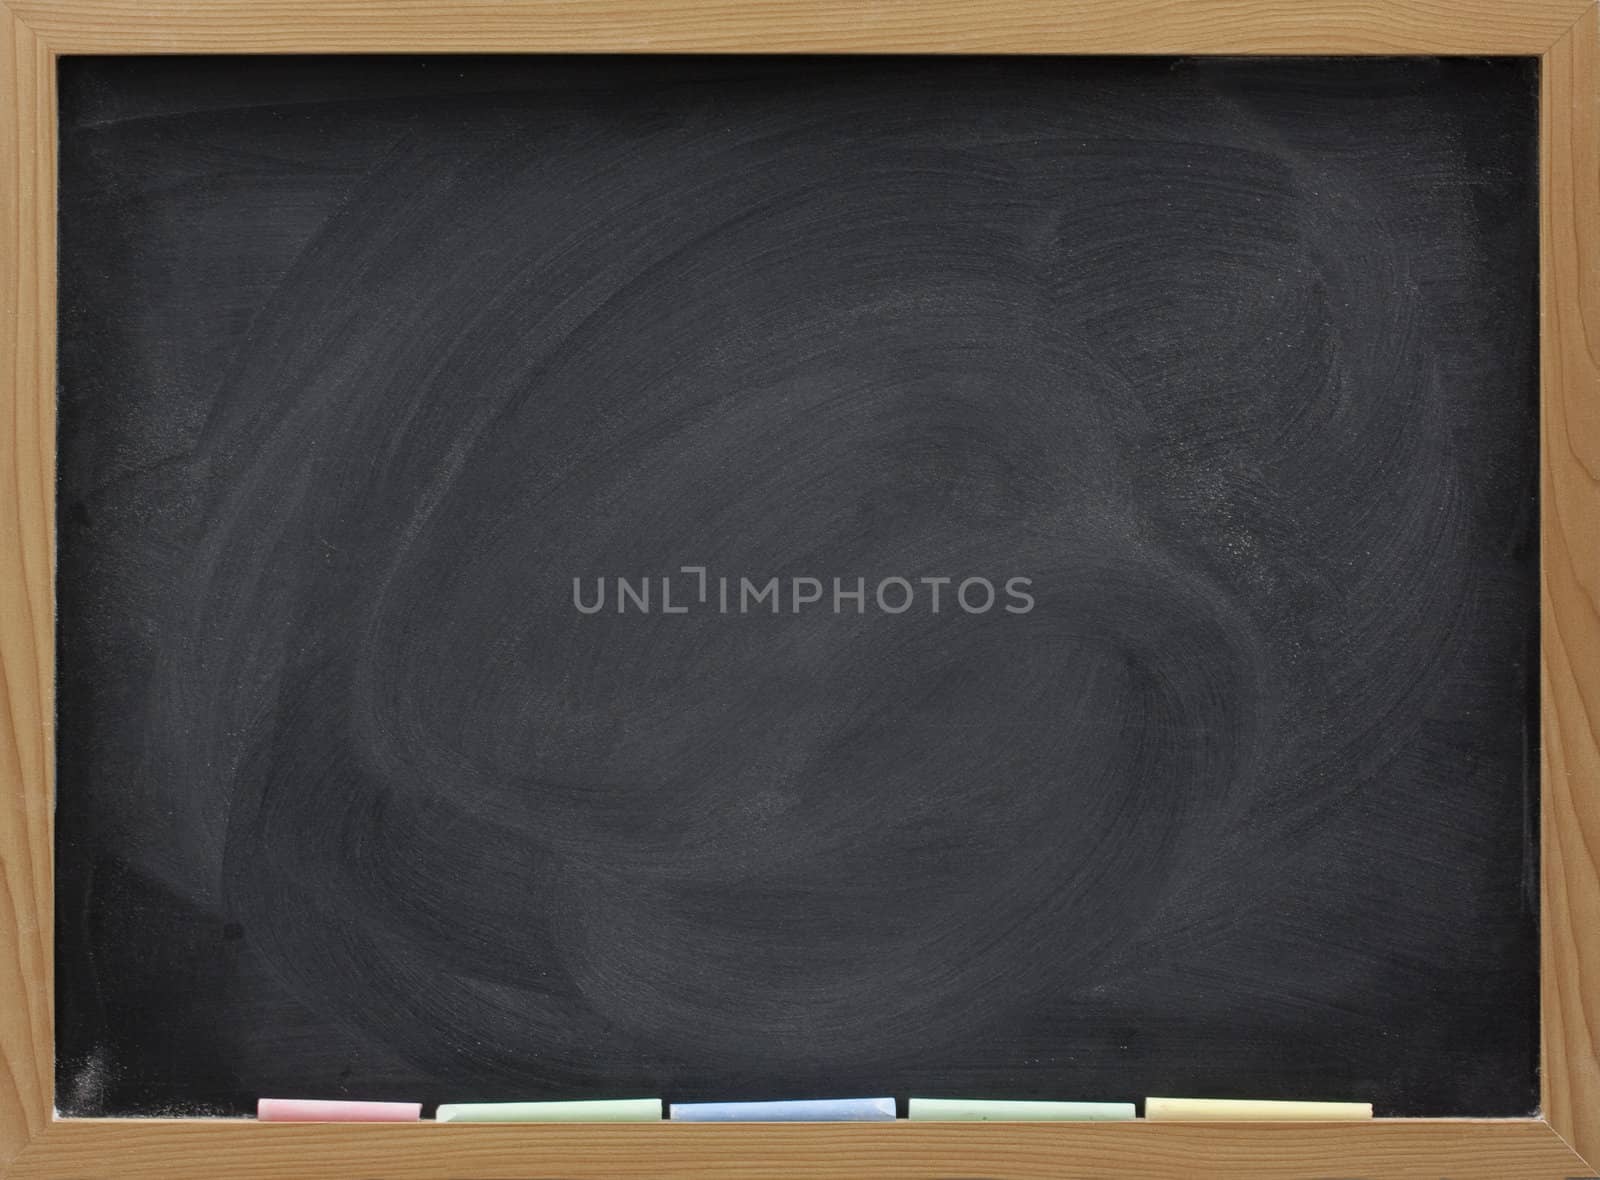 blank blackboard in wooden frame, colorful chalk sticks, and eraser smudges